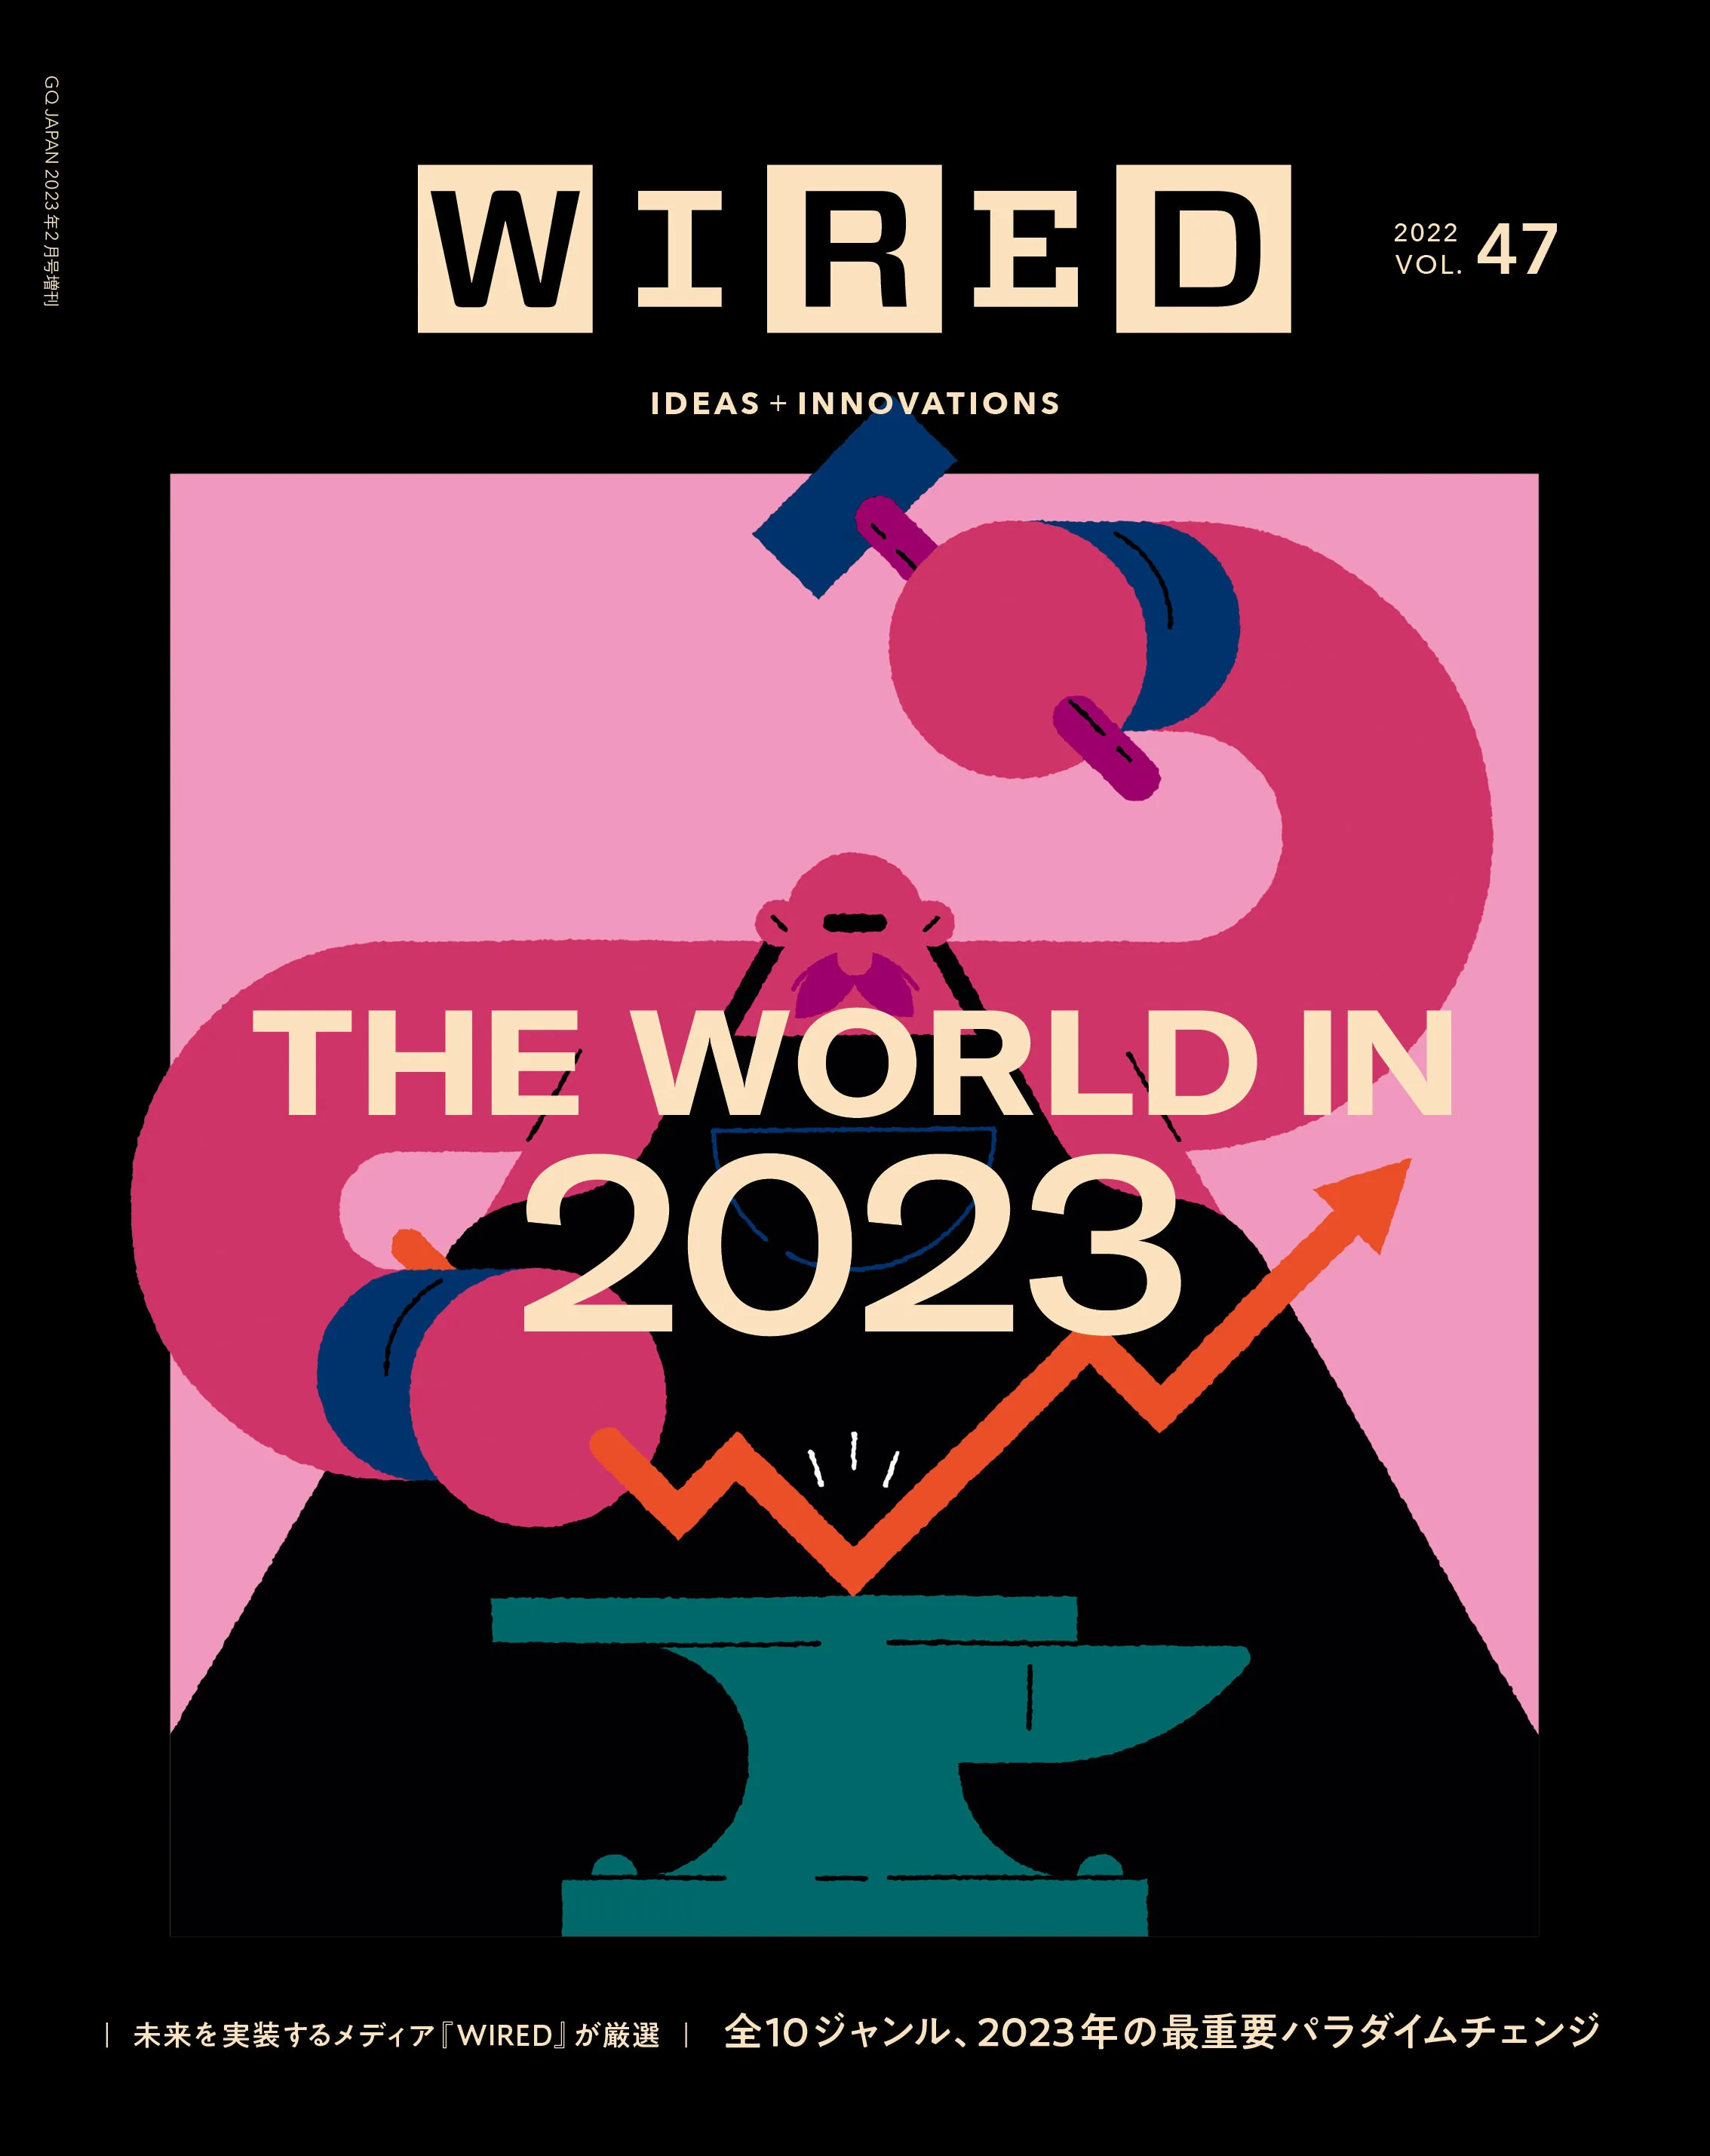 VOL.47 THE WORLD IN 2023 のカバーイメージ